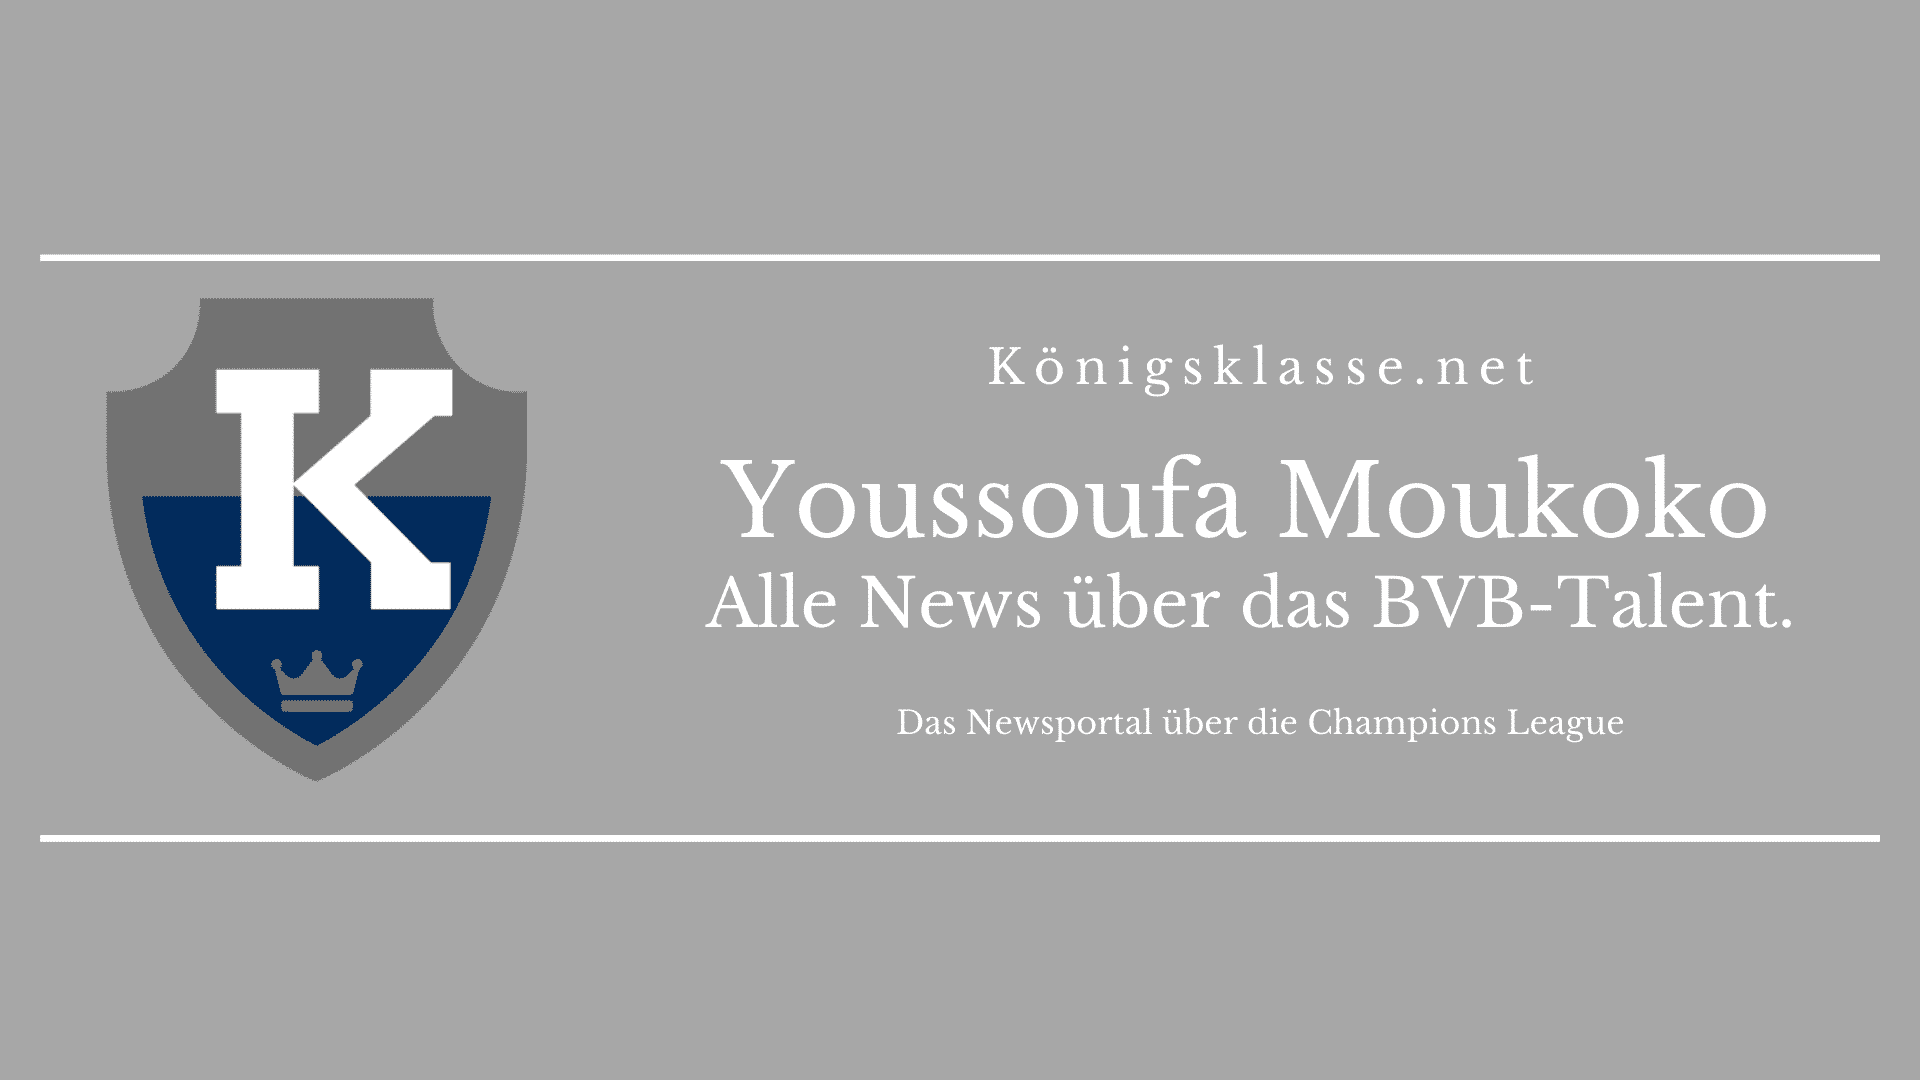 Youssoufa Moukoko von Borussia Dortmund: Hier gibt's es alle Informationen über Moukoko. Alter, Erfolge, Vereine, Champions League, News, Teams, Herkunft.